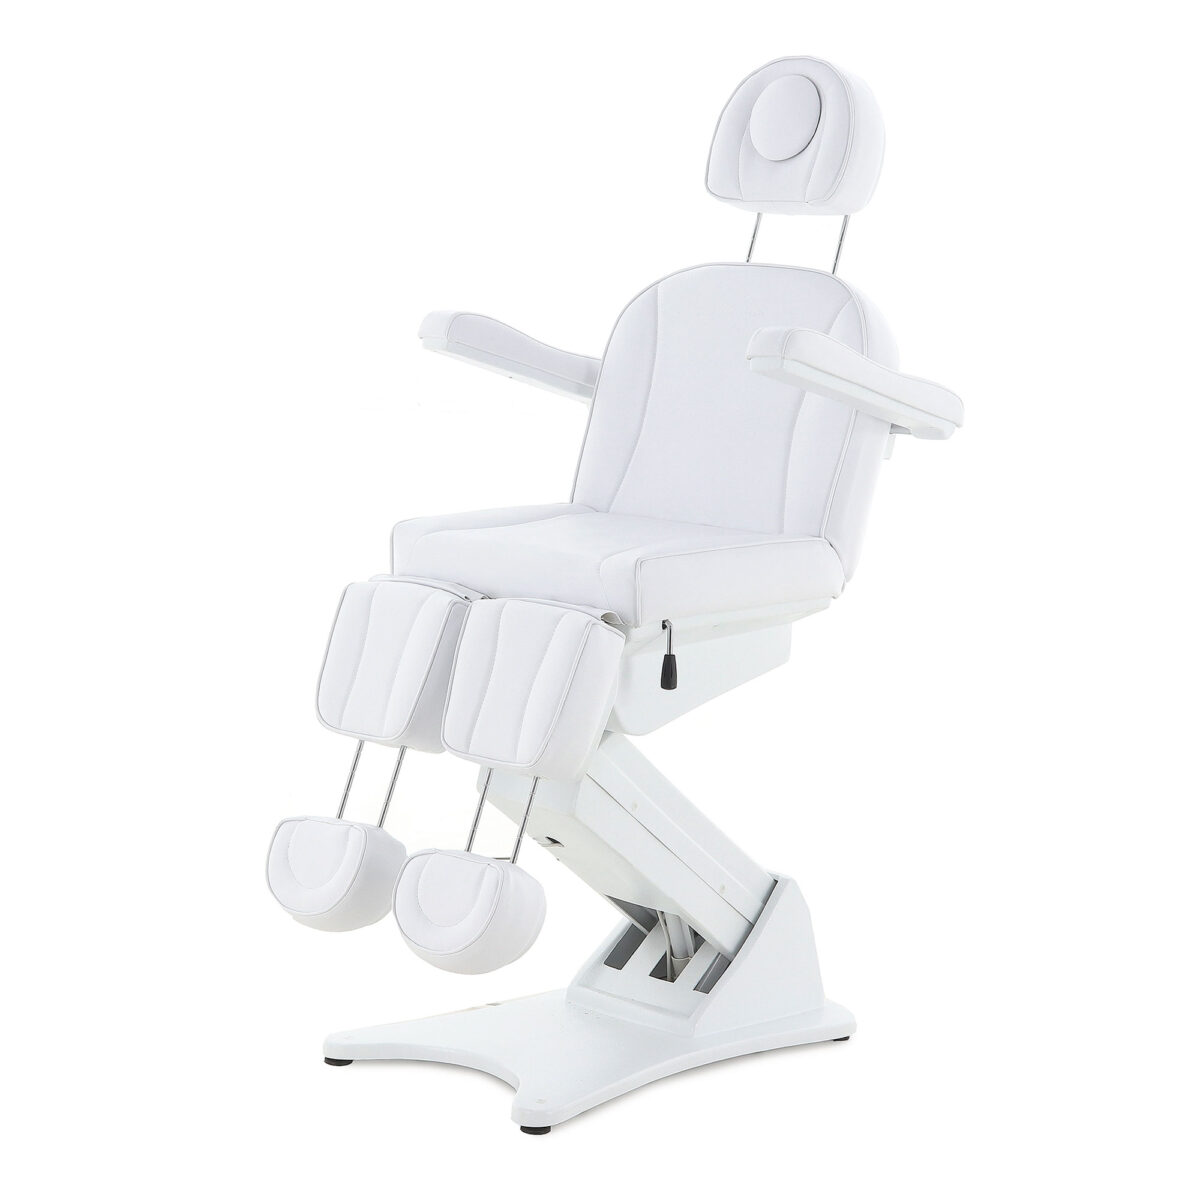 Изображение Кресло косметологическое ММКП-3 КО-193Д-02 (4ф, 3 м) с ножной педалью